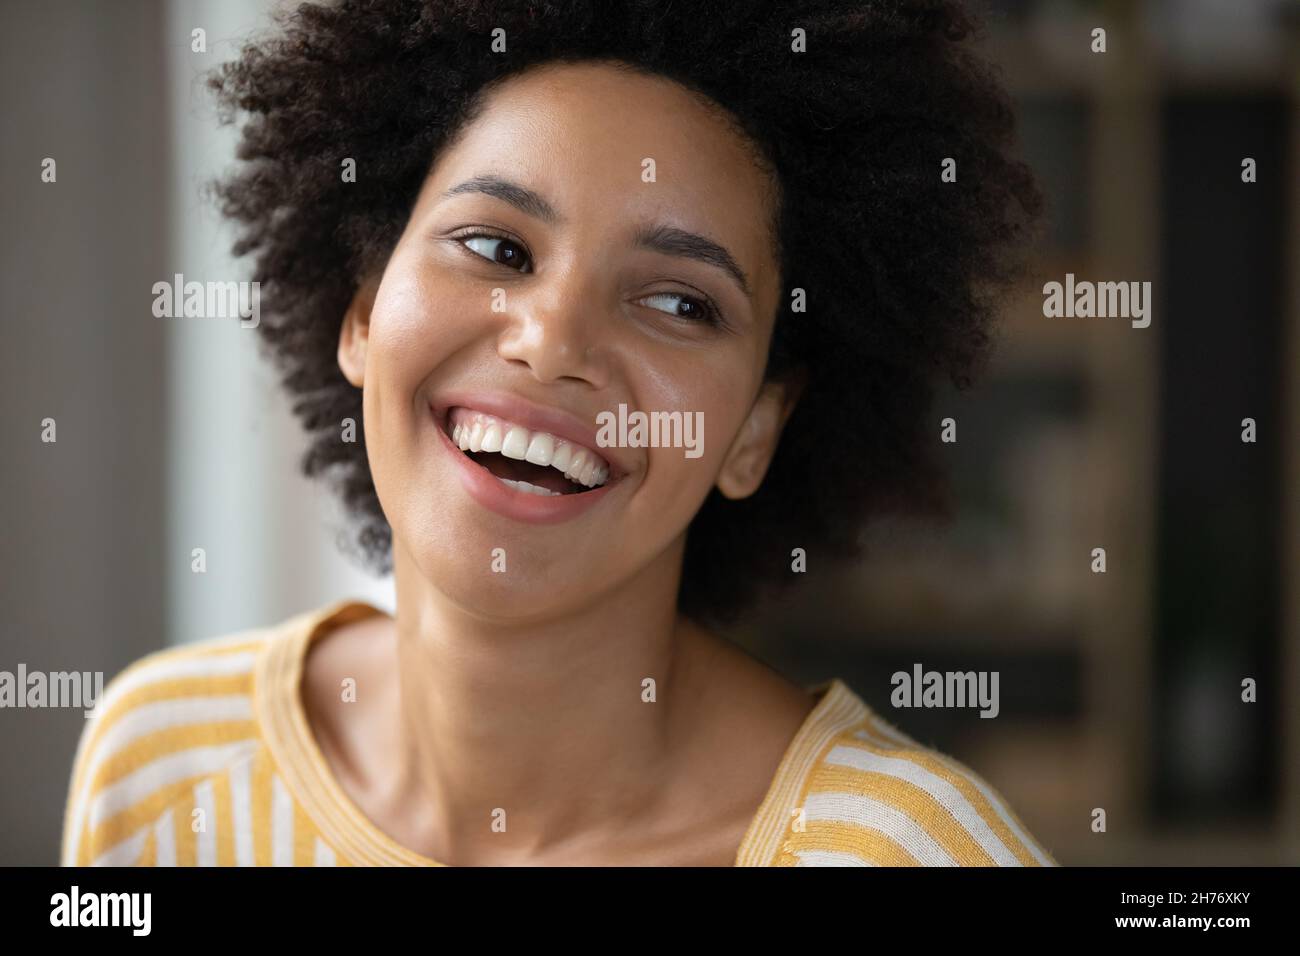 Happy joyful Black girl looking away with toothy smile Stock Photo